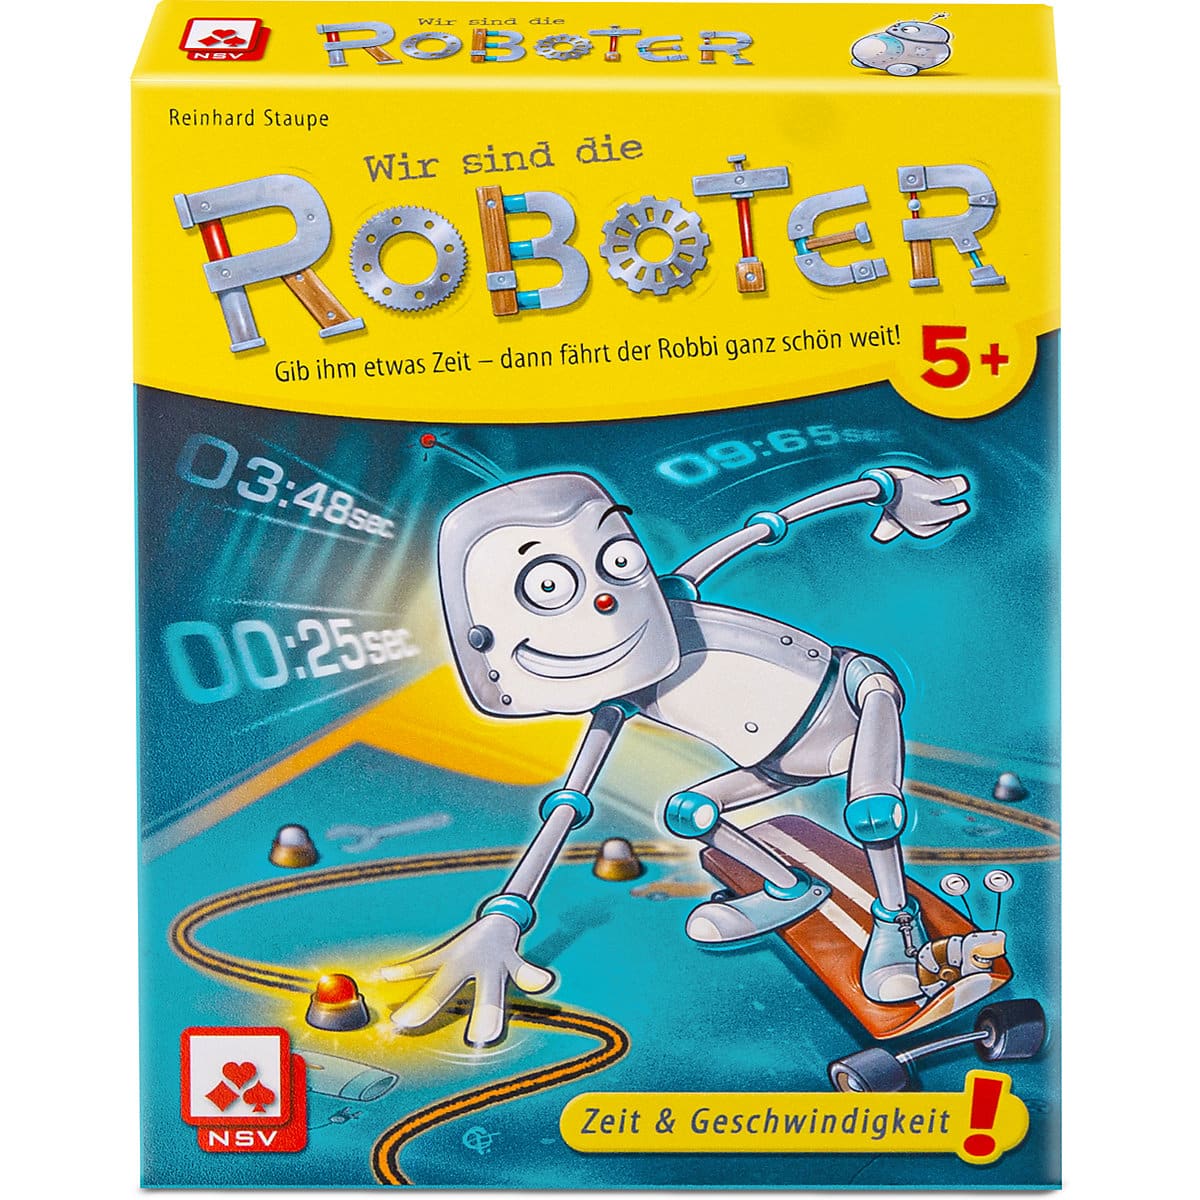 Amigo Wir sind die Roboter online kaufen bei Brett-Spiele.de